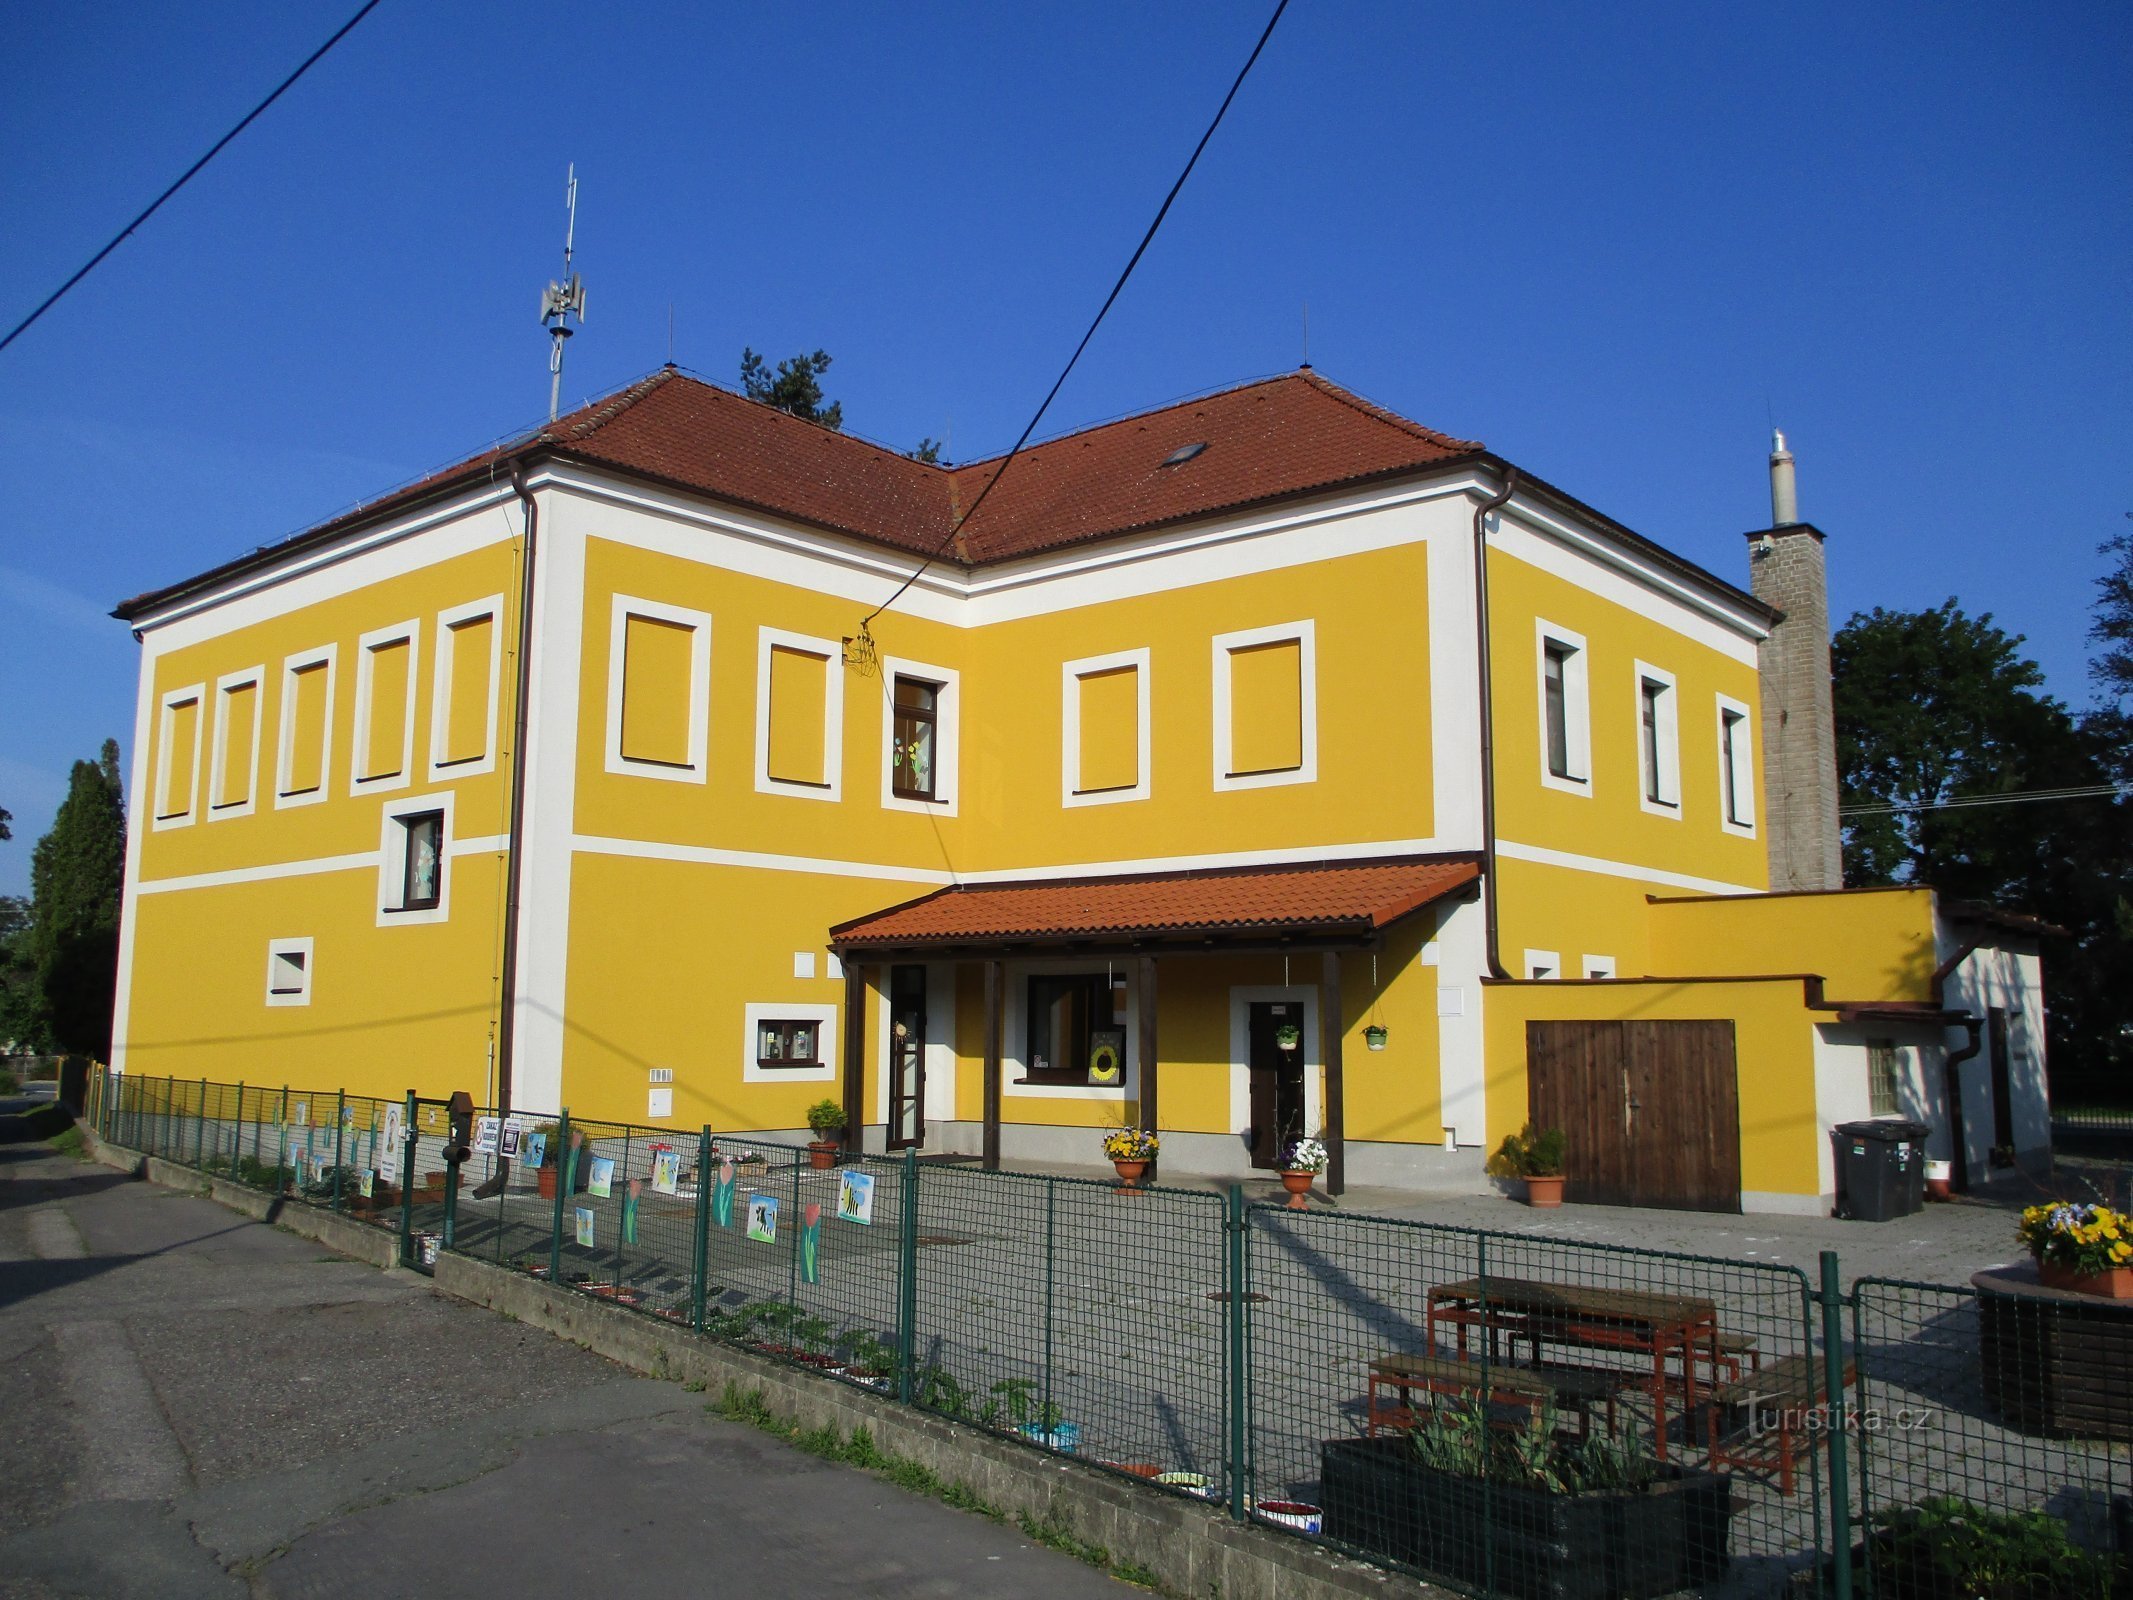 Vrtec v Slatini po rekonstrukciji (Hradec Králové)